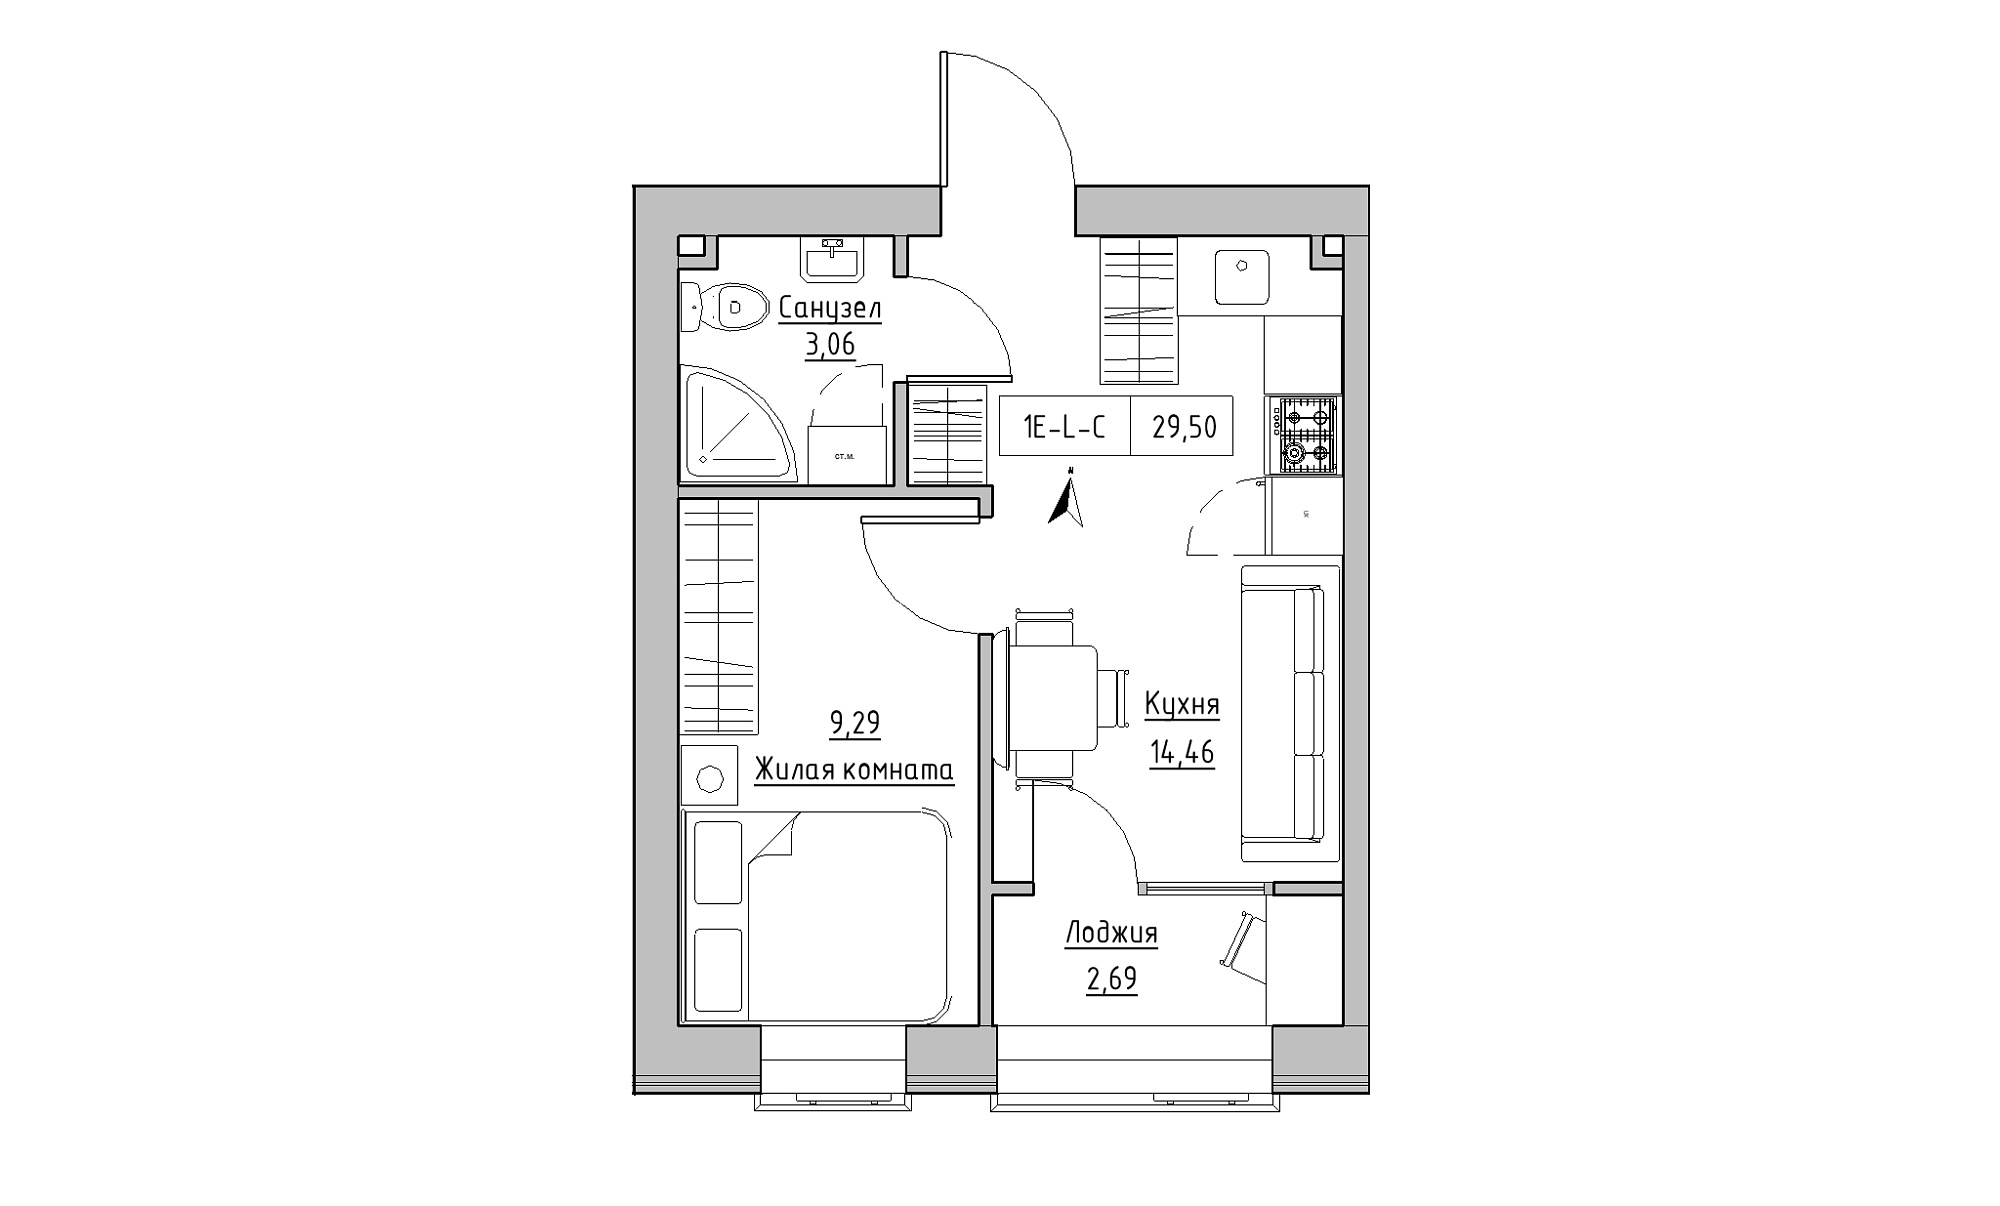 Планировка 1-к квартира площей 29.5м2, KS-023-03/0011.